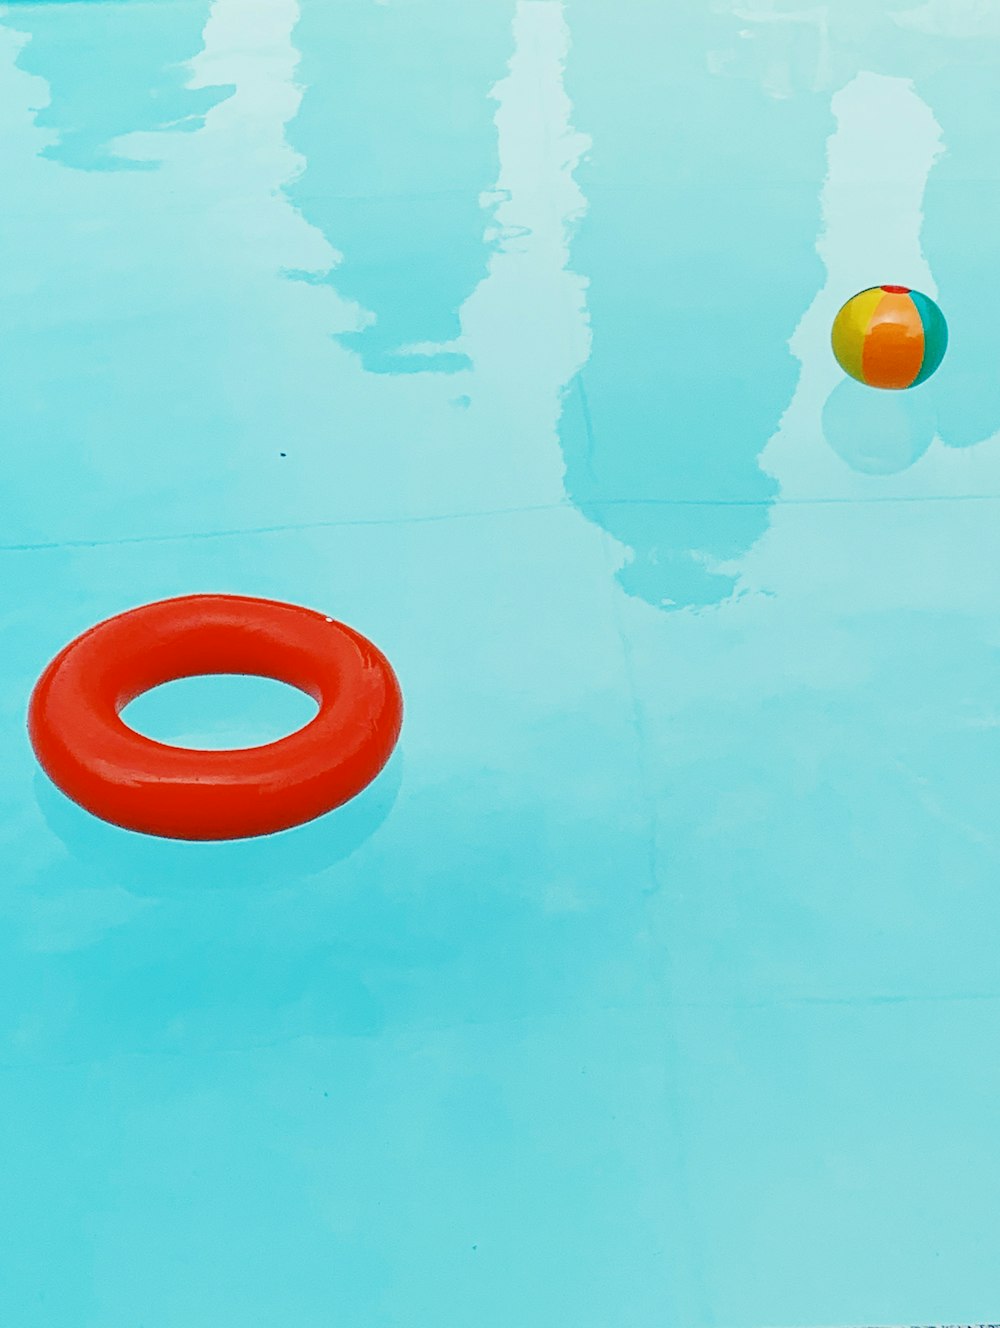 galleggiante ad anello sulla piscina